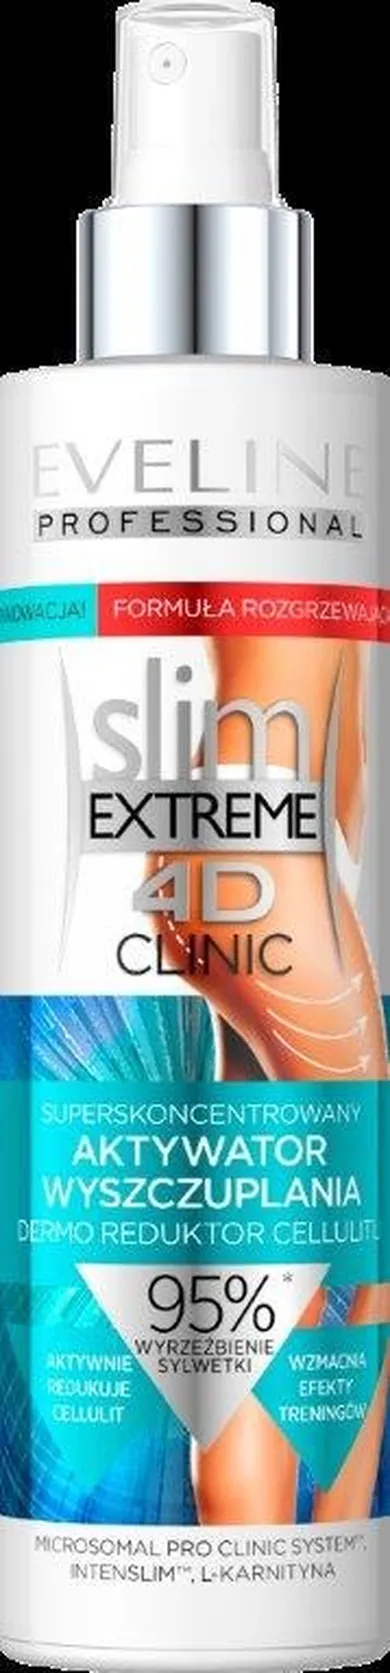 Eveline, 4D slim EXTREME Clinic, superskoncentrowany aktywator wyszczuplania, 200 ml